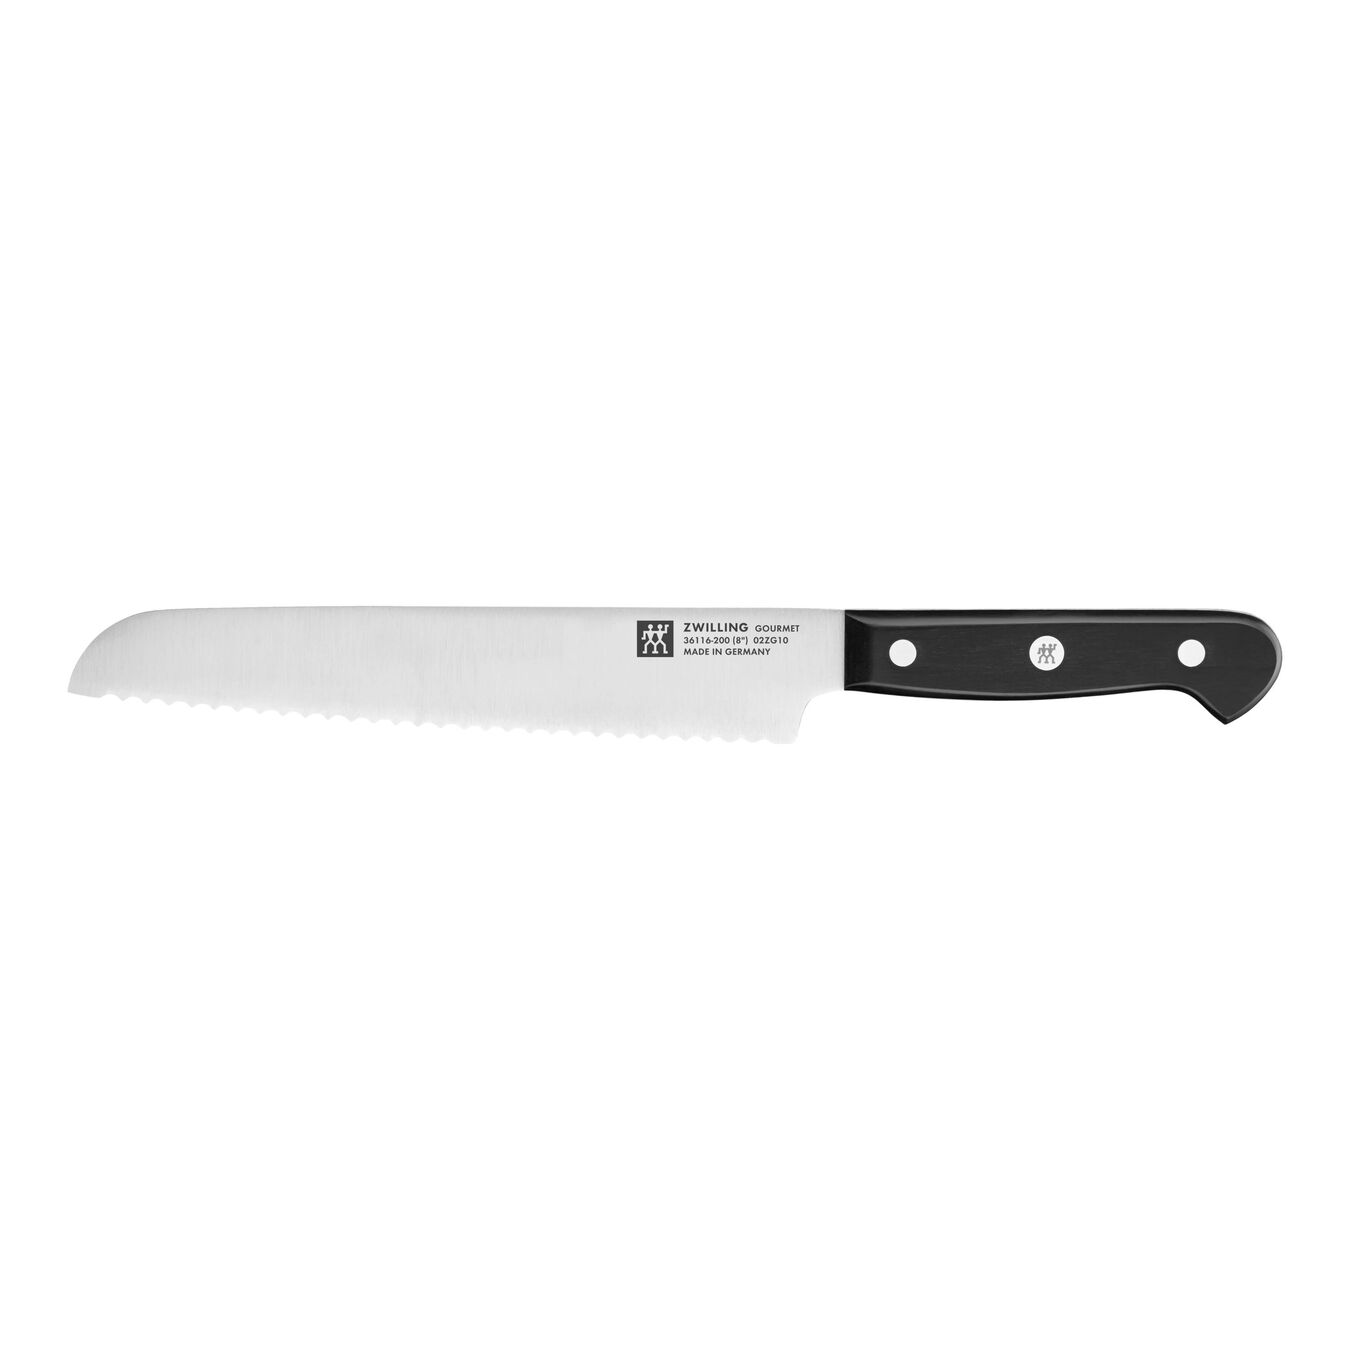 Taco de cuchillos con sistema de autoafilado 7-pzs, Marrón,,large 12